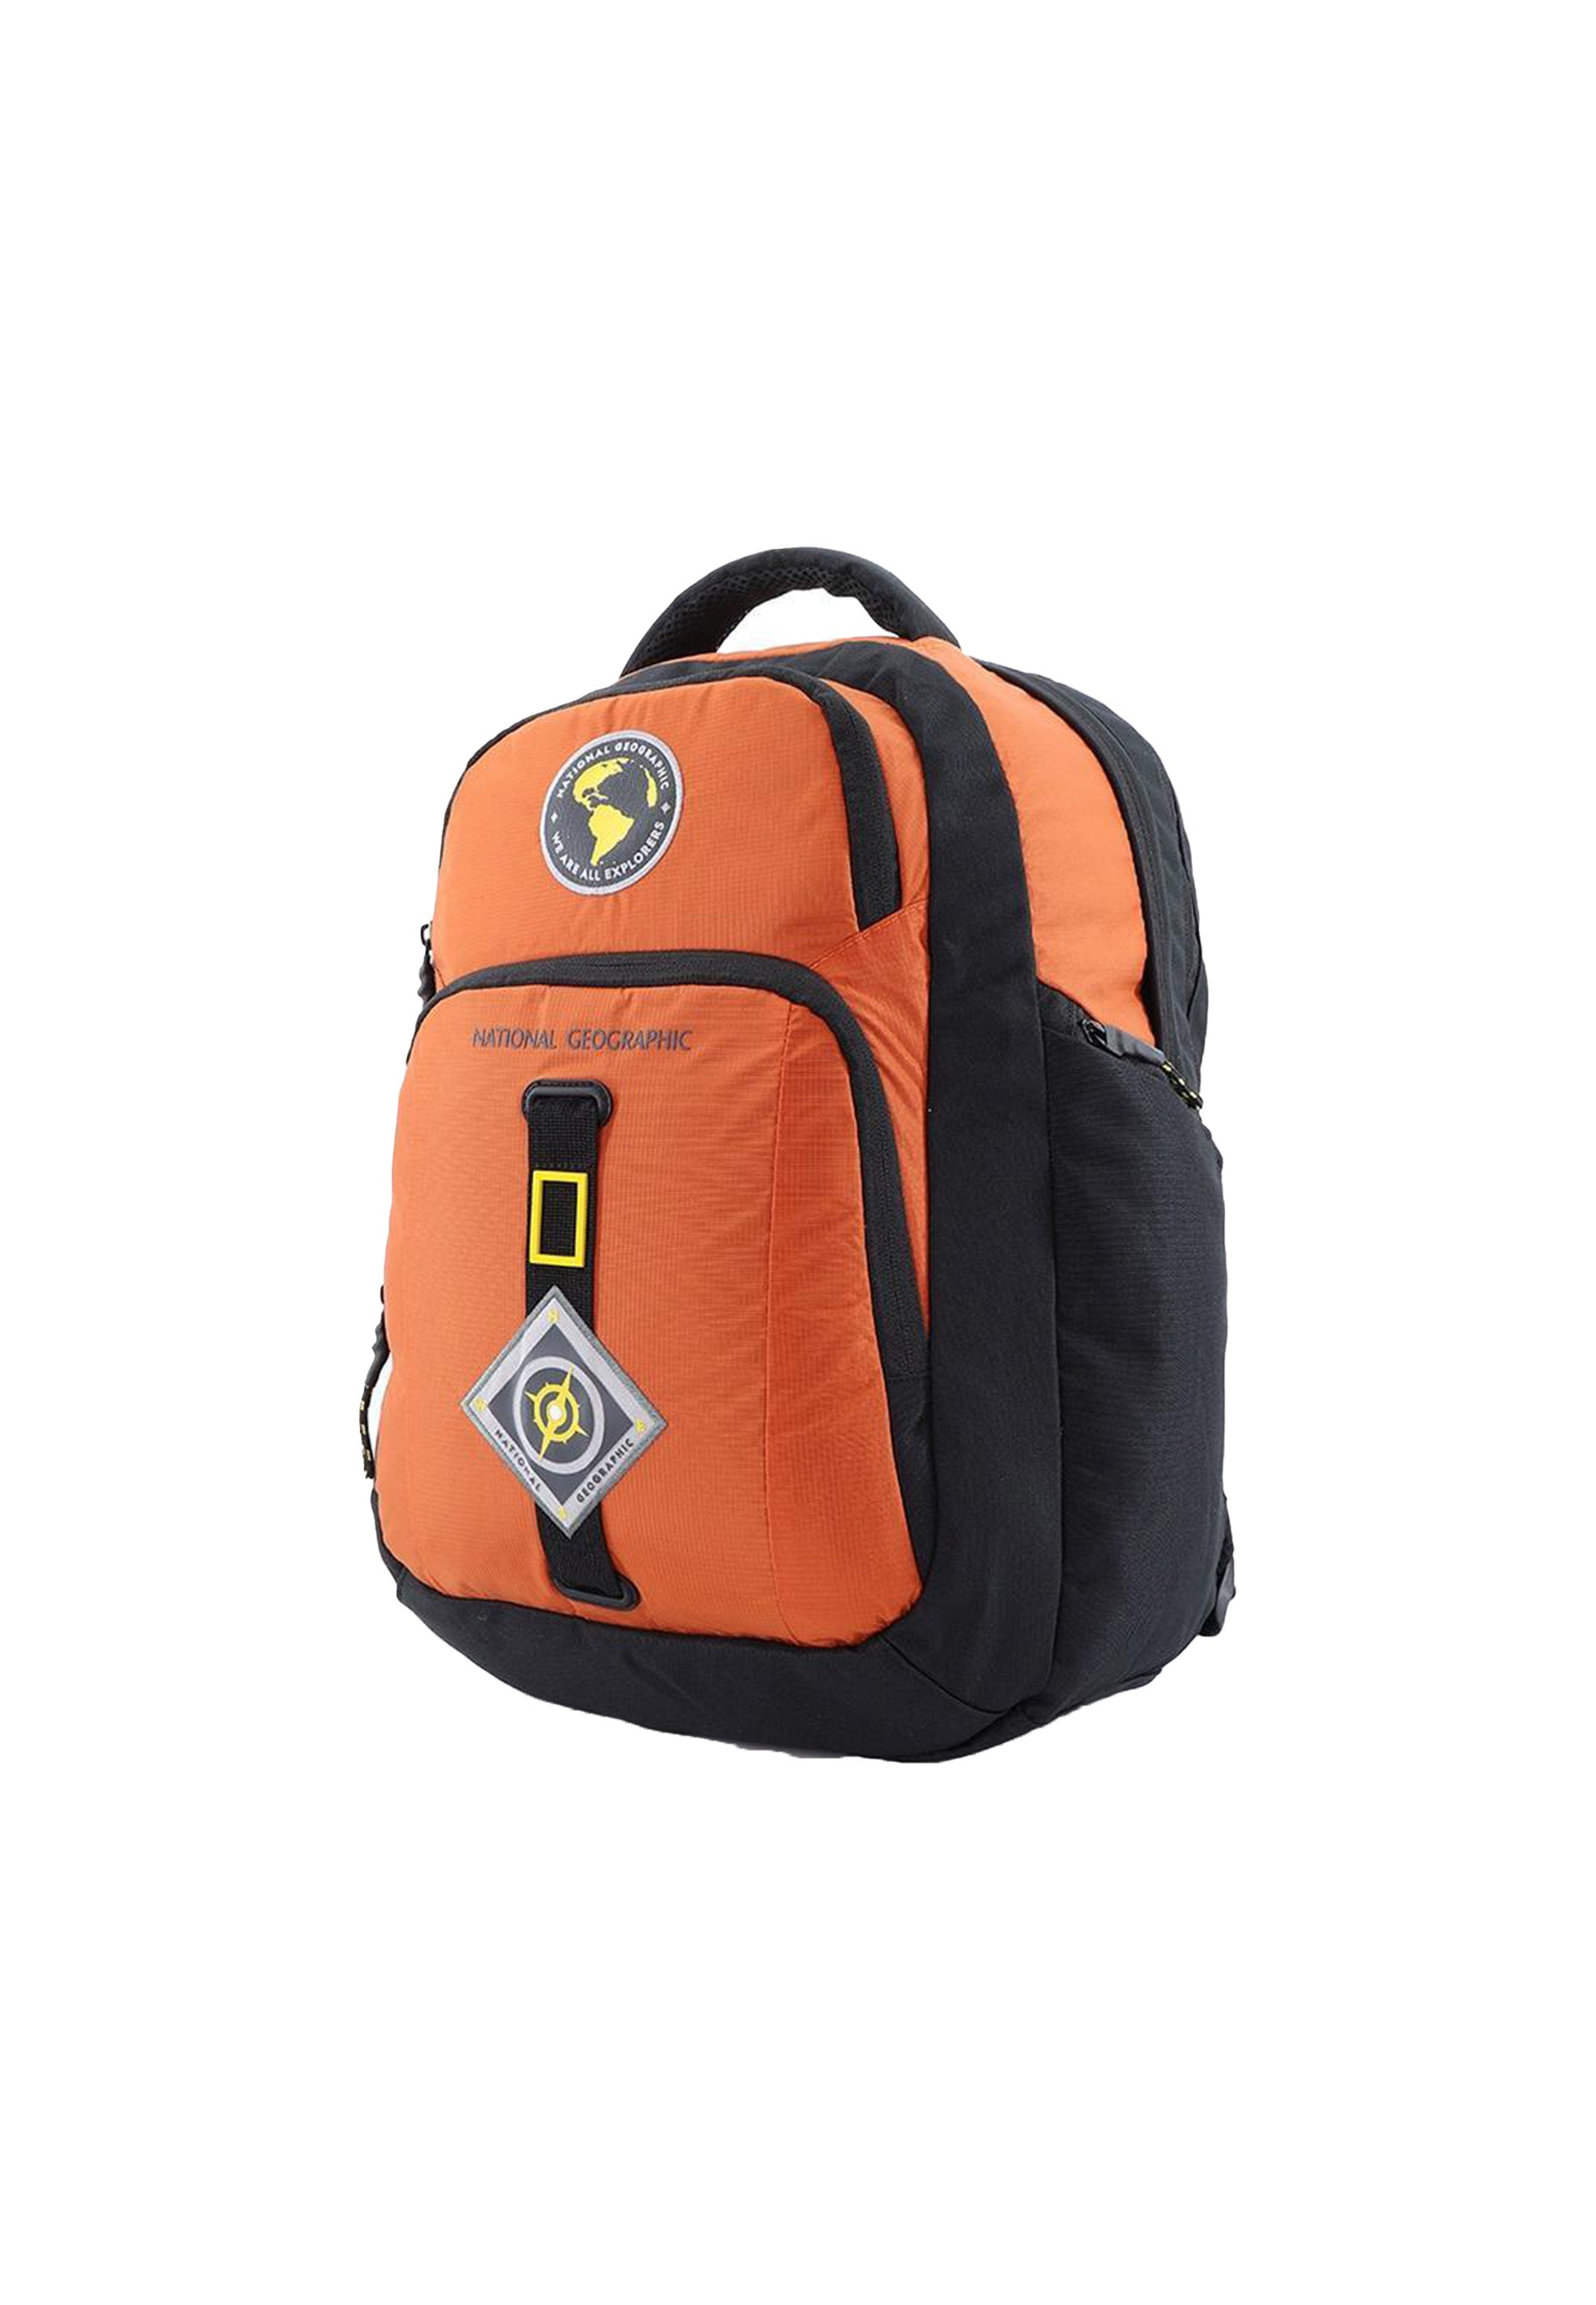 National Geographic - New Explorer | Outdoor Freizeit Laptoprucksack | Orange